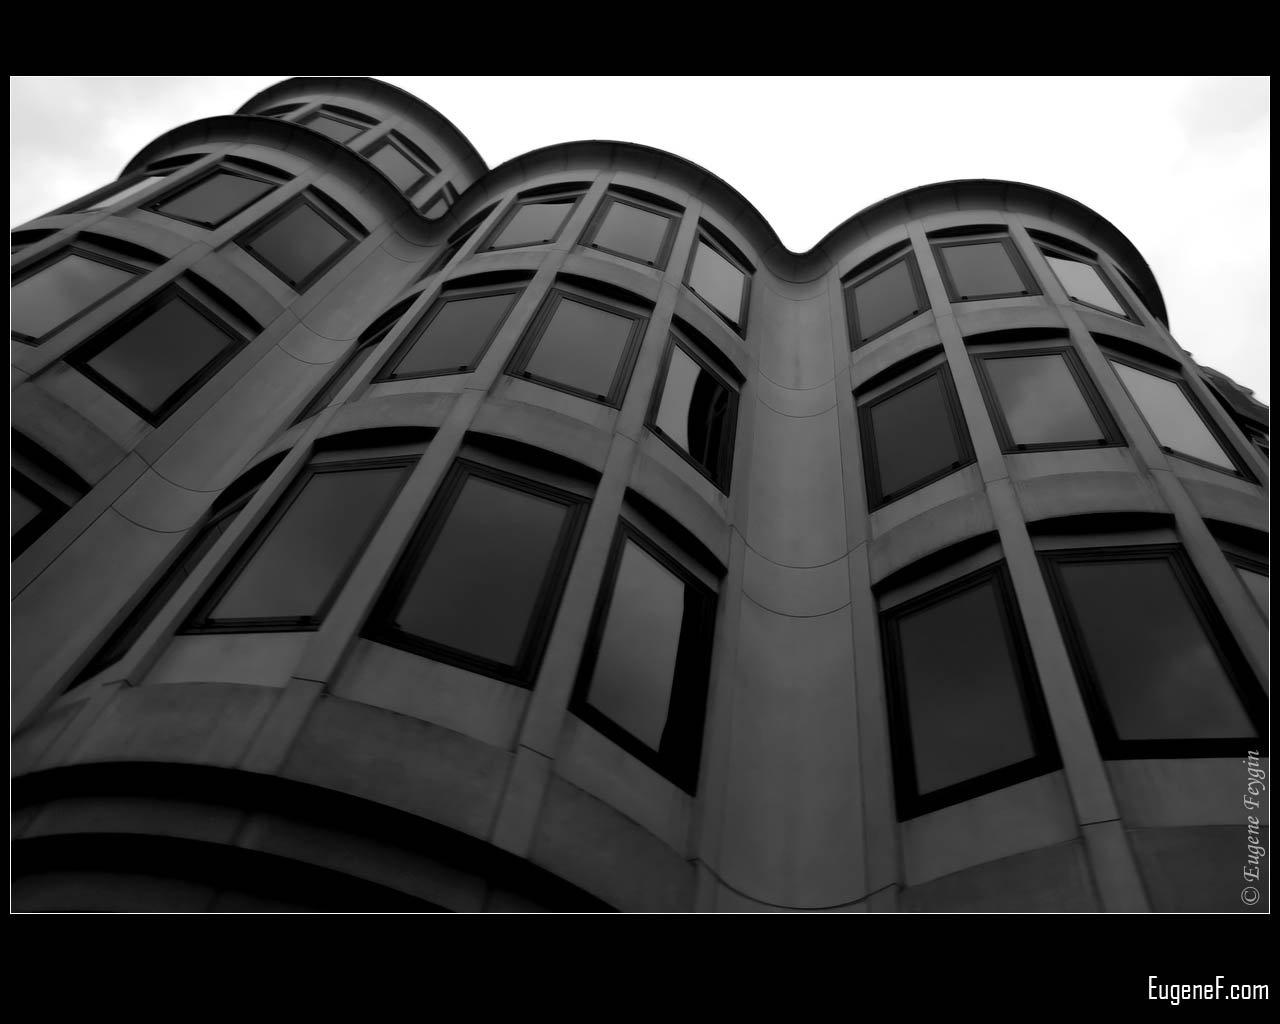 Black And White HD Wallpaper In Architecture Imageci